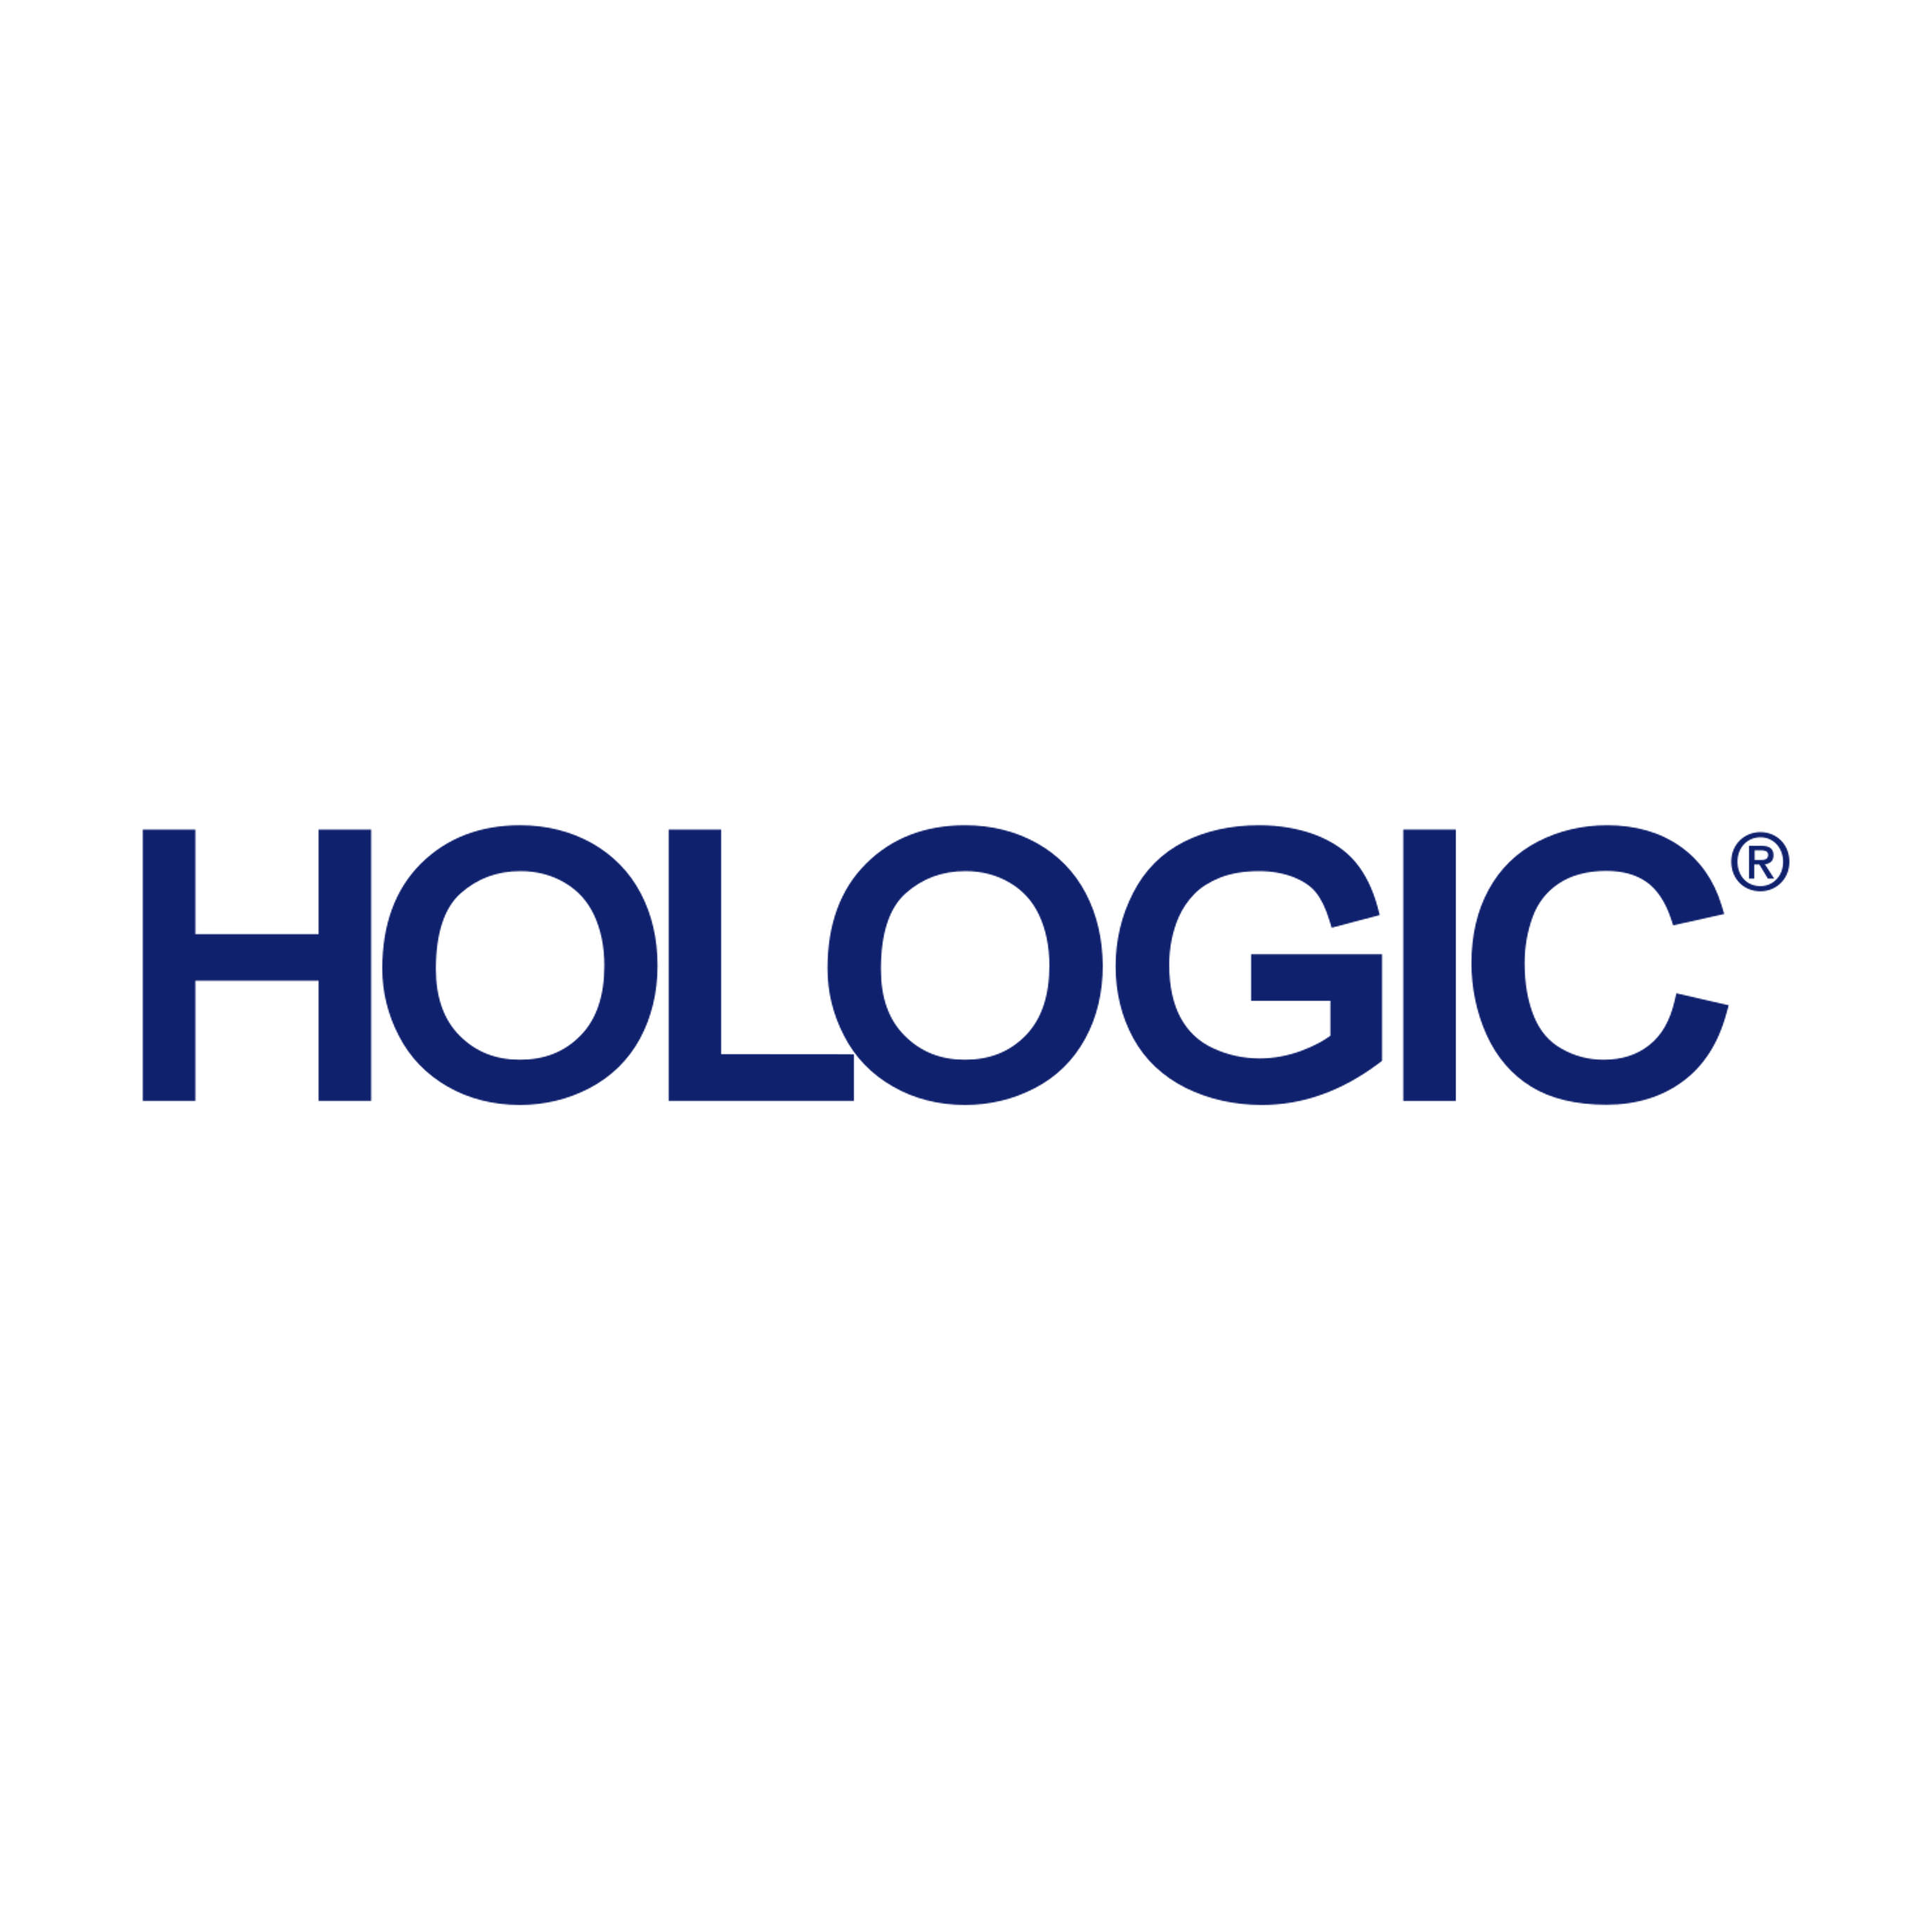 Equiptrack includes Hologic equipment